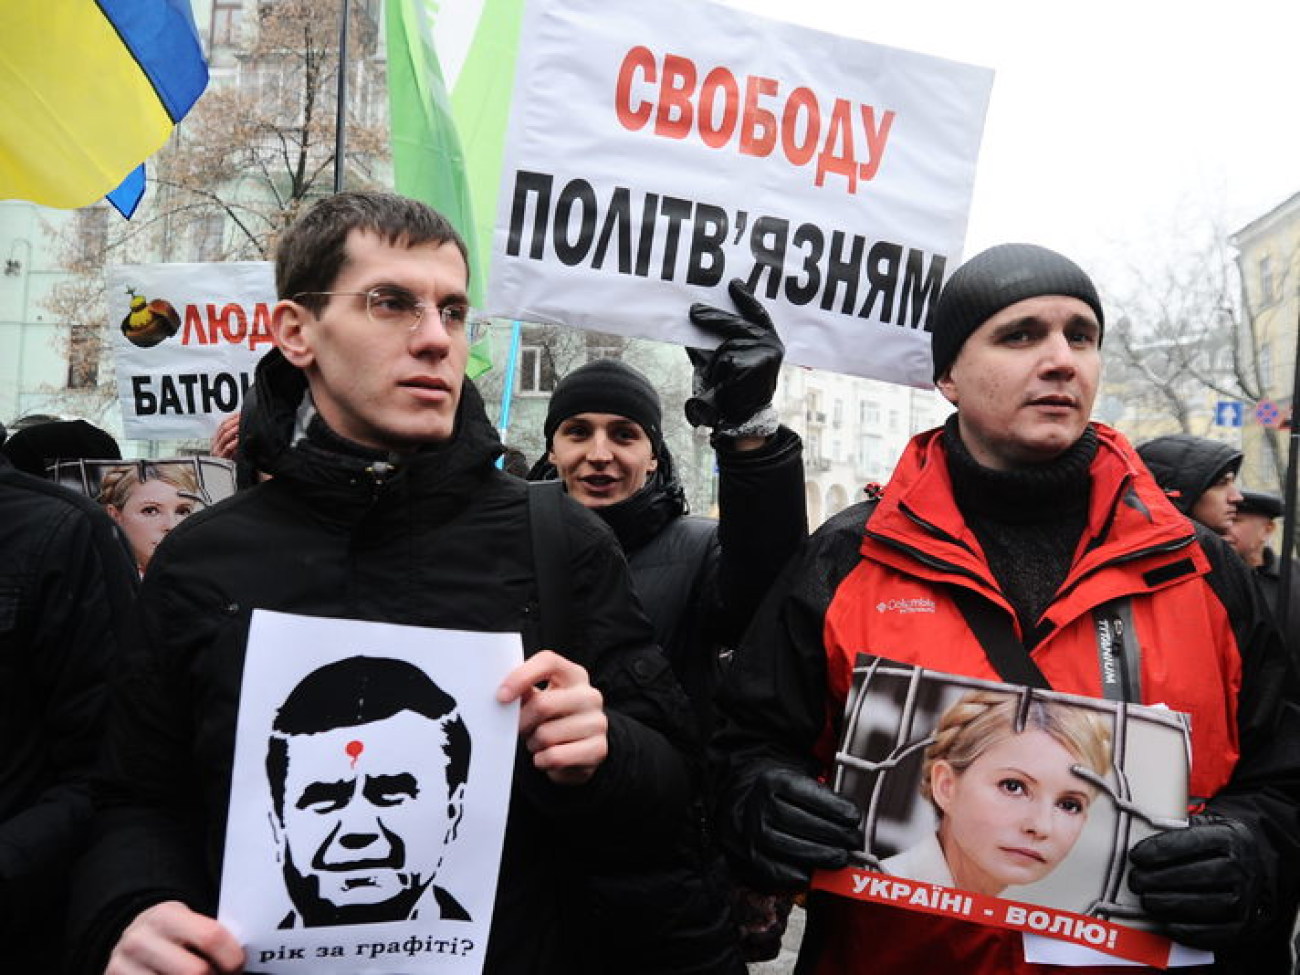 Сторонники Тимошенко подрались с обнимающимися студентами, 21 января 2013г.